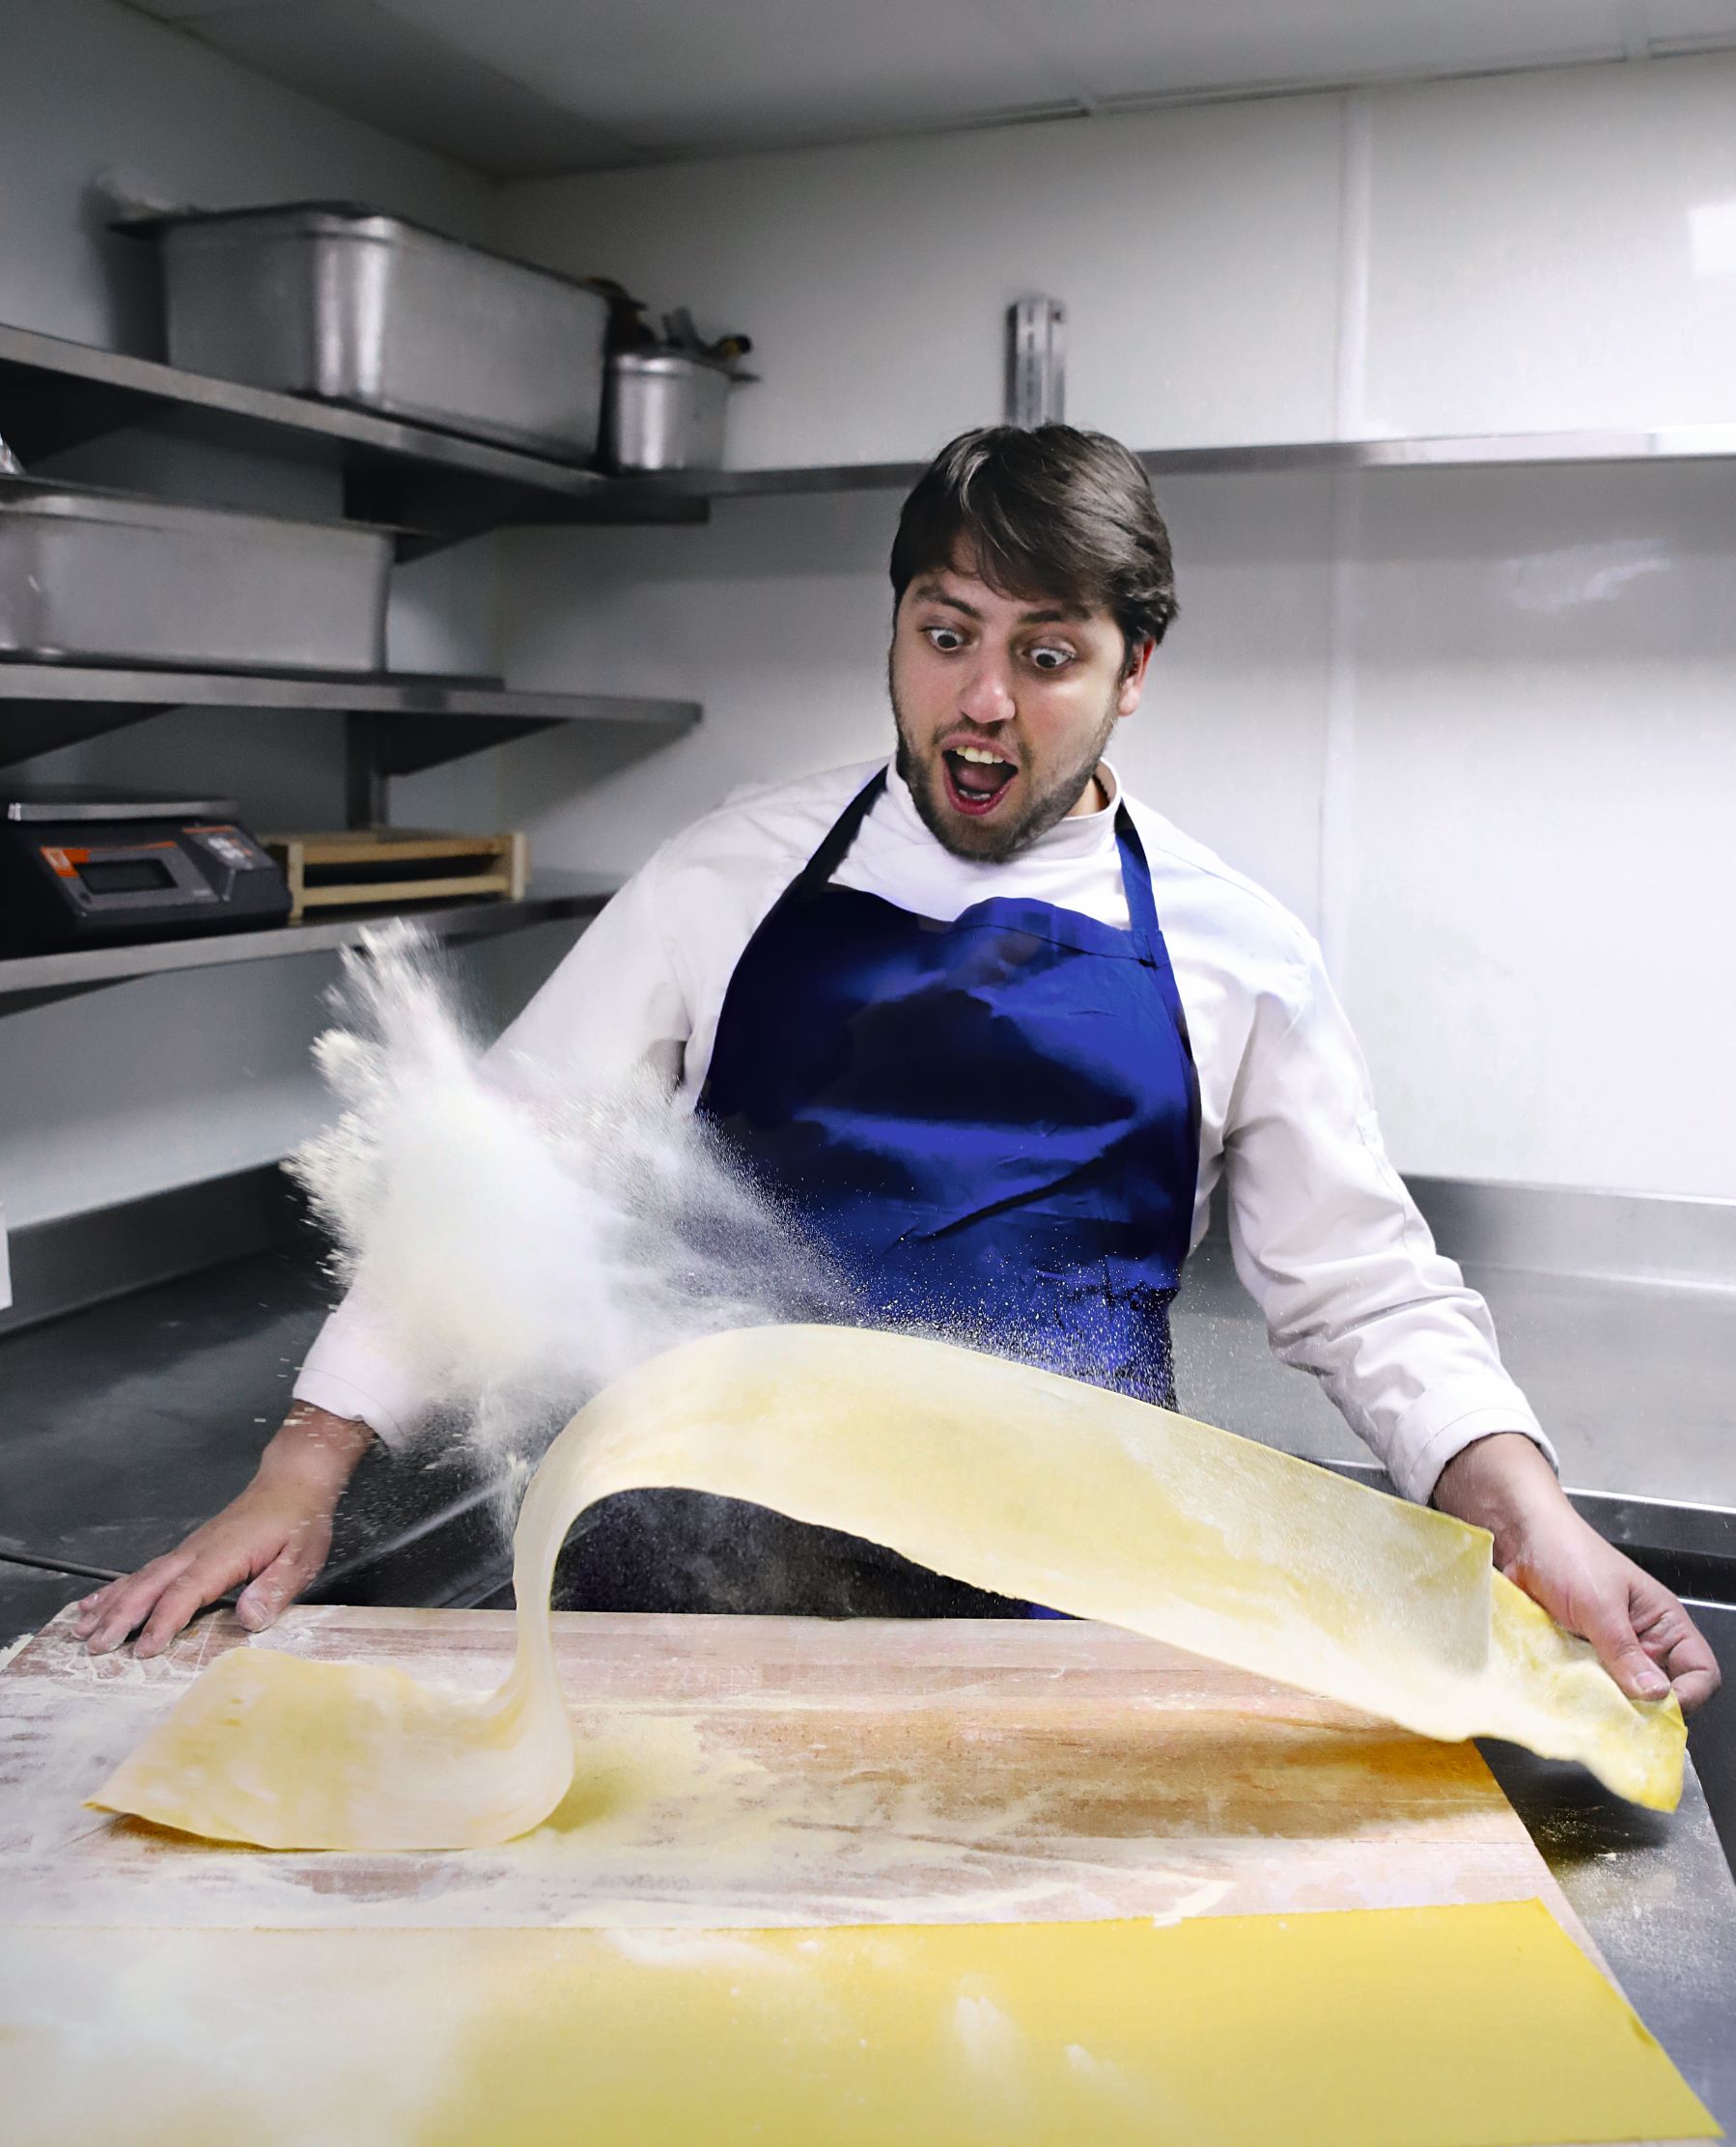 Big Mamma chef Rocco Dimartino making pasta, as featured in our new book Big Mamma Cucina Popolare